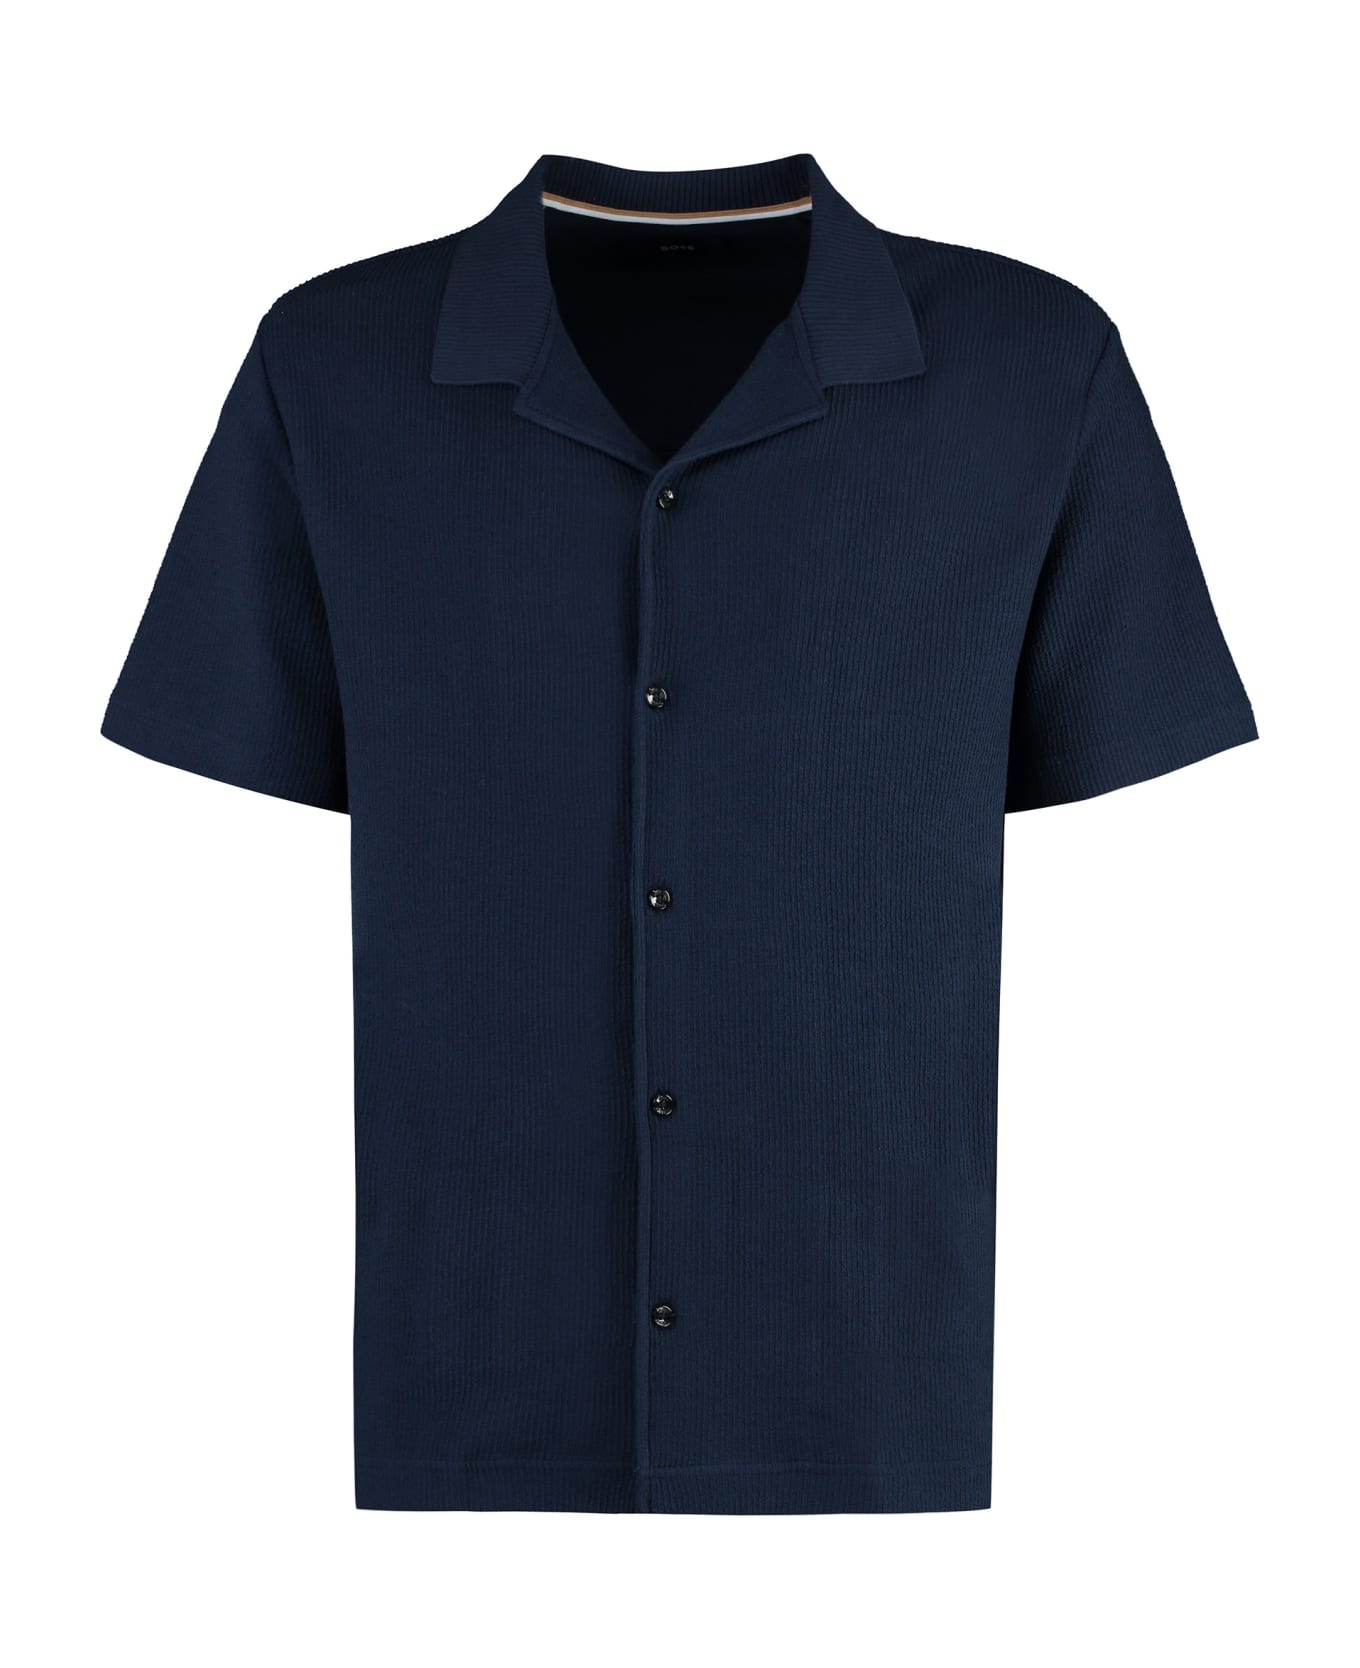 Hugo Boss Short Sleeve Cotton Shirt - blue